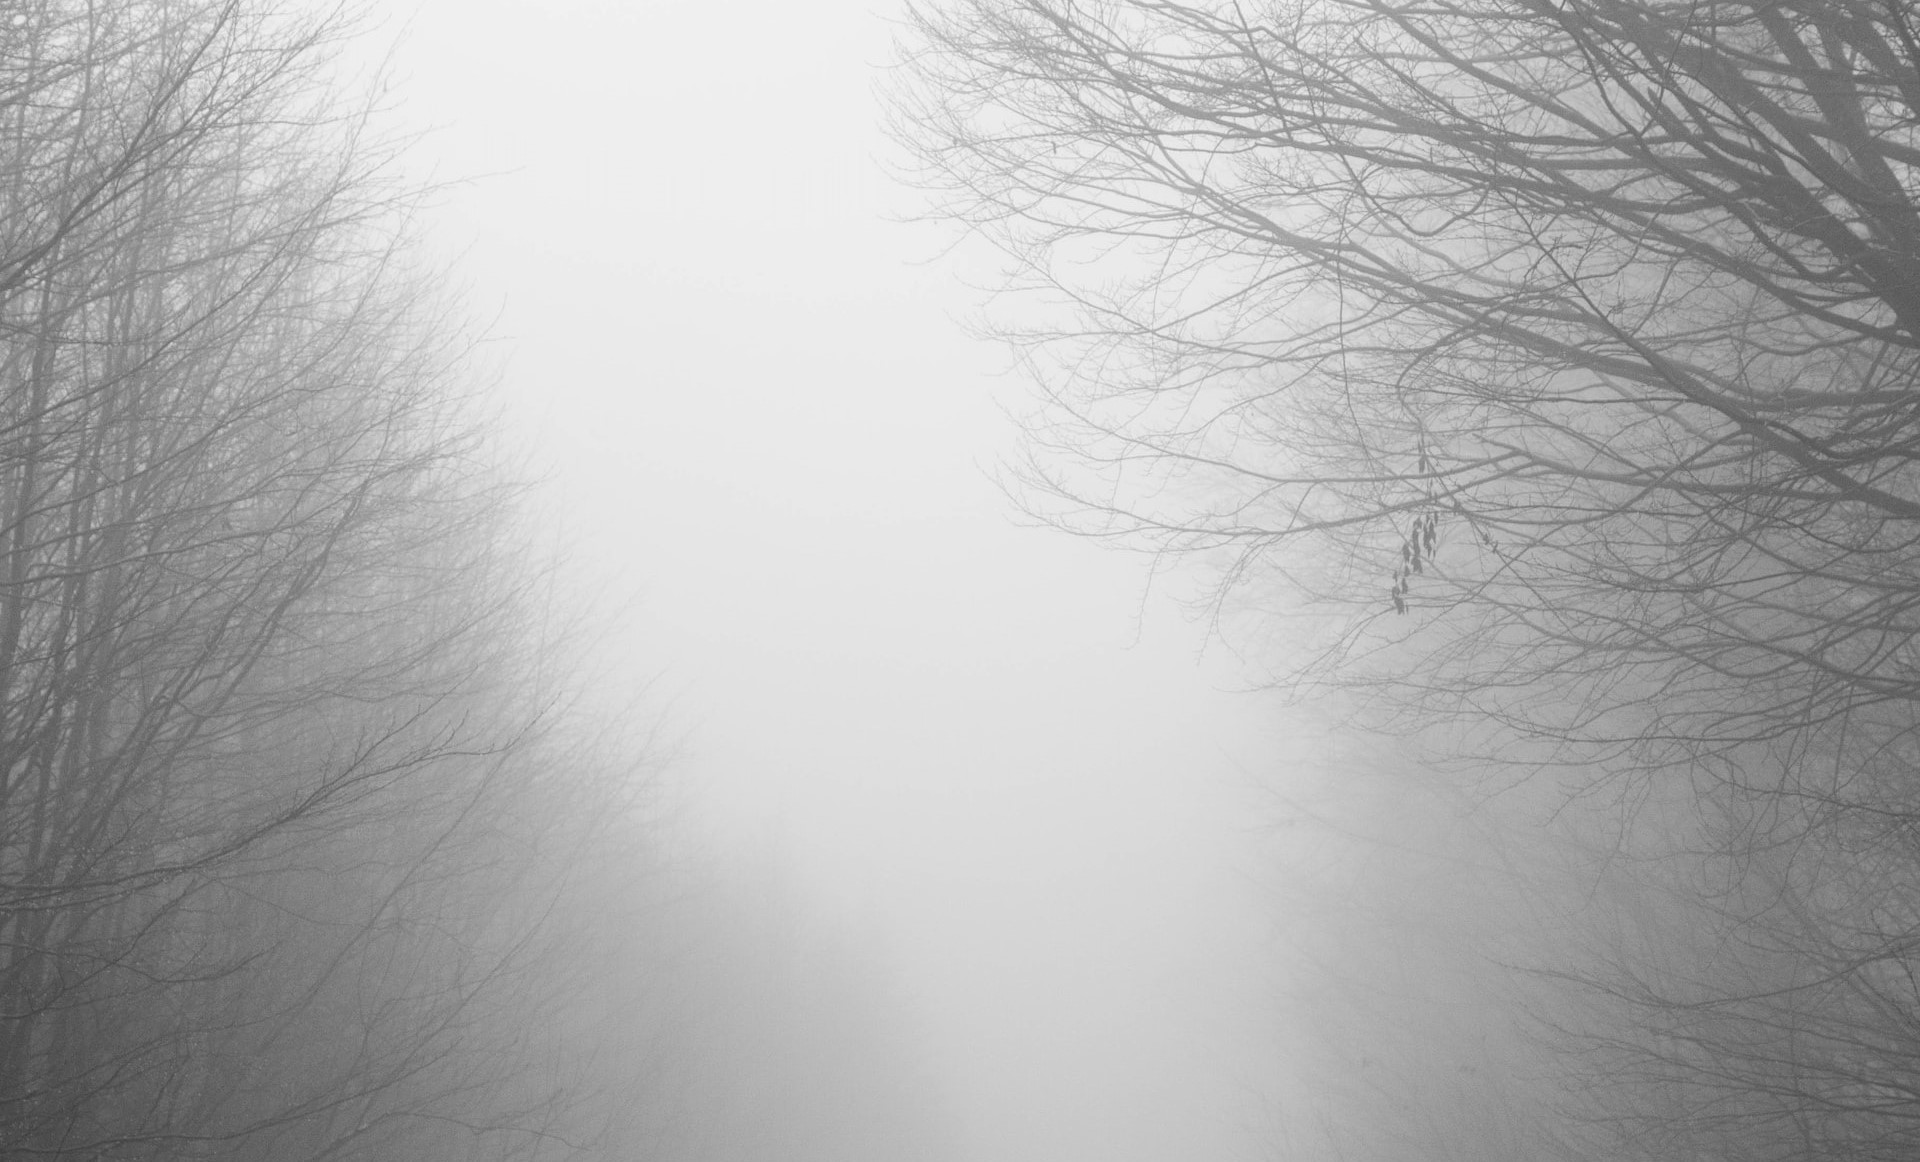 Sárga jelzésű figyelmeztetés 70 Kolozs megyei településen a sűrű köd miatt